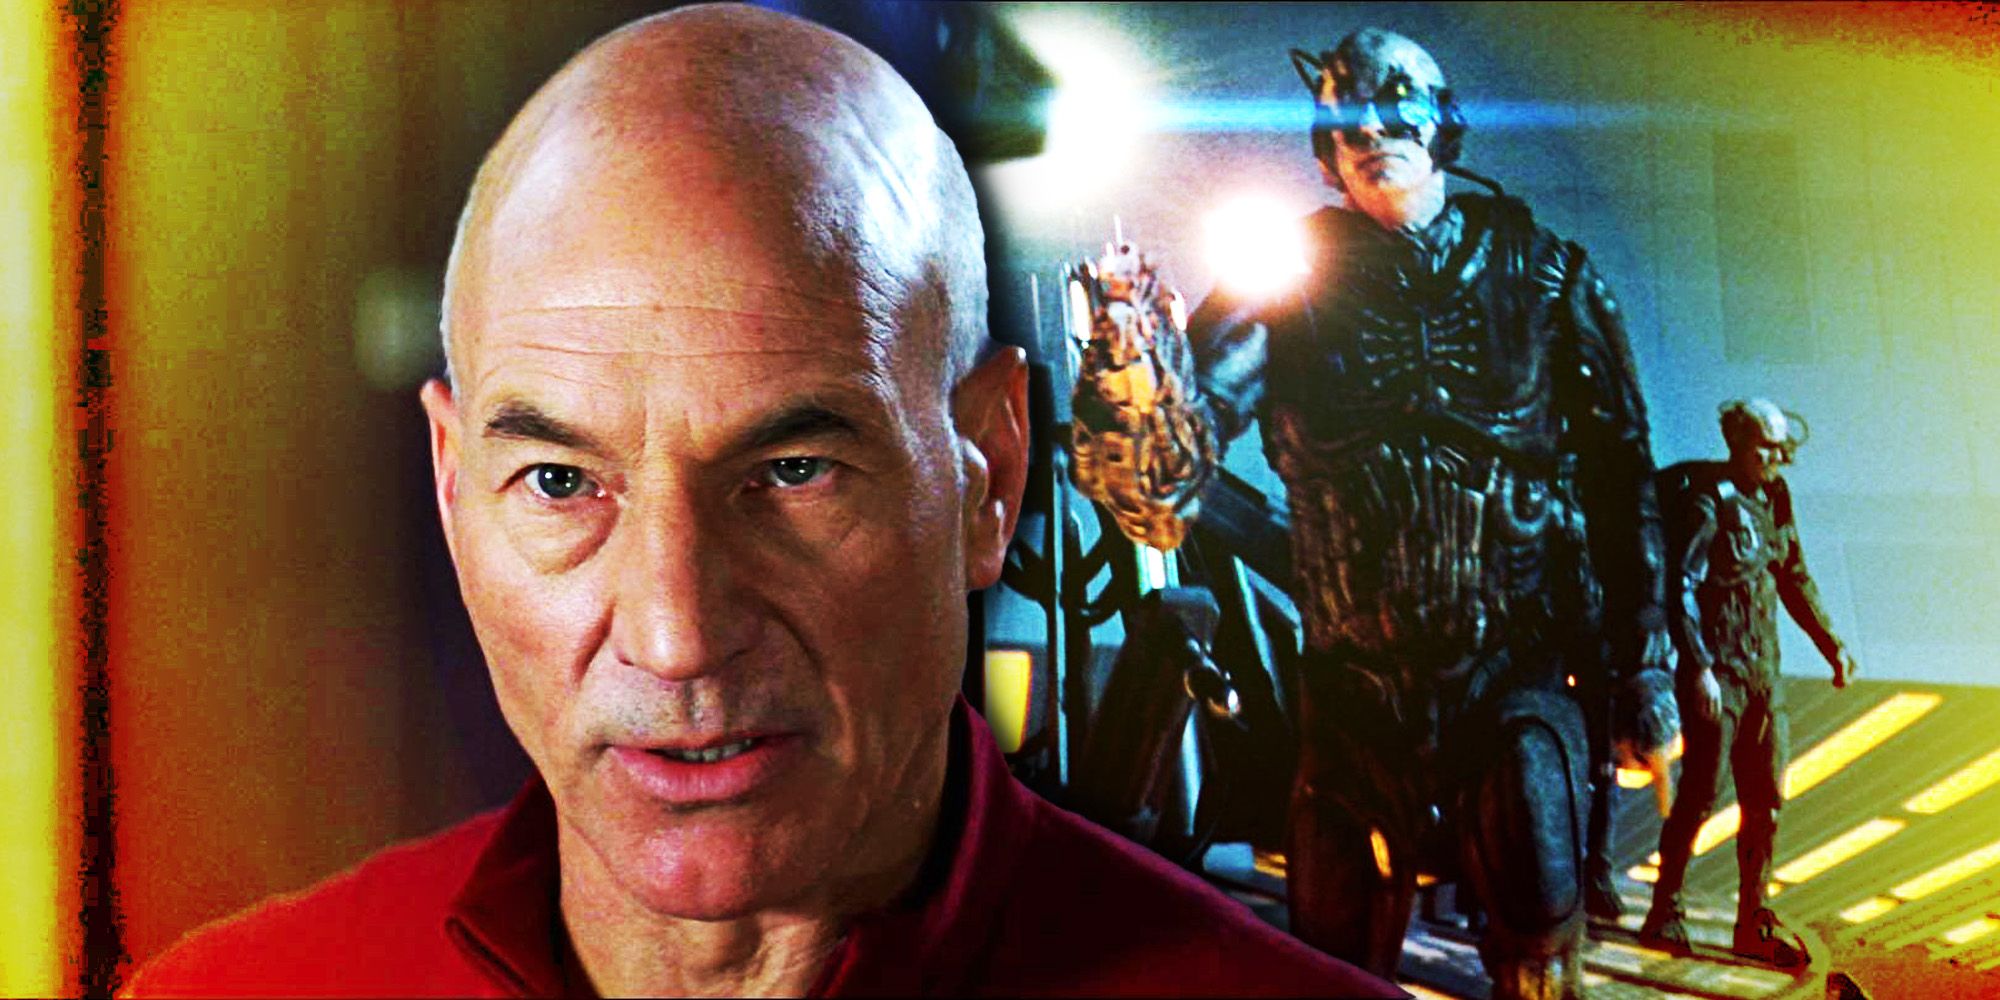 Olvídese de la muerte familiar de Picard y haga que Jean-Luc sea más "heroico" en Star Trek: primer contacto, dijo Patrick Stewart